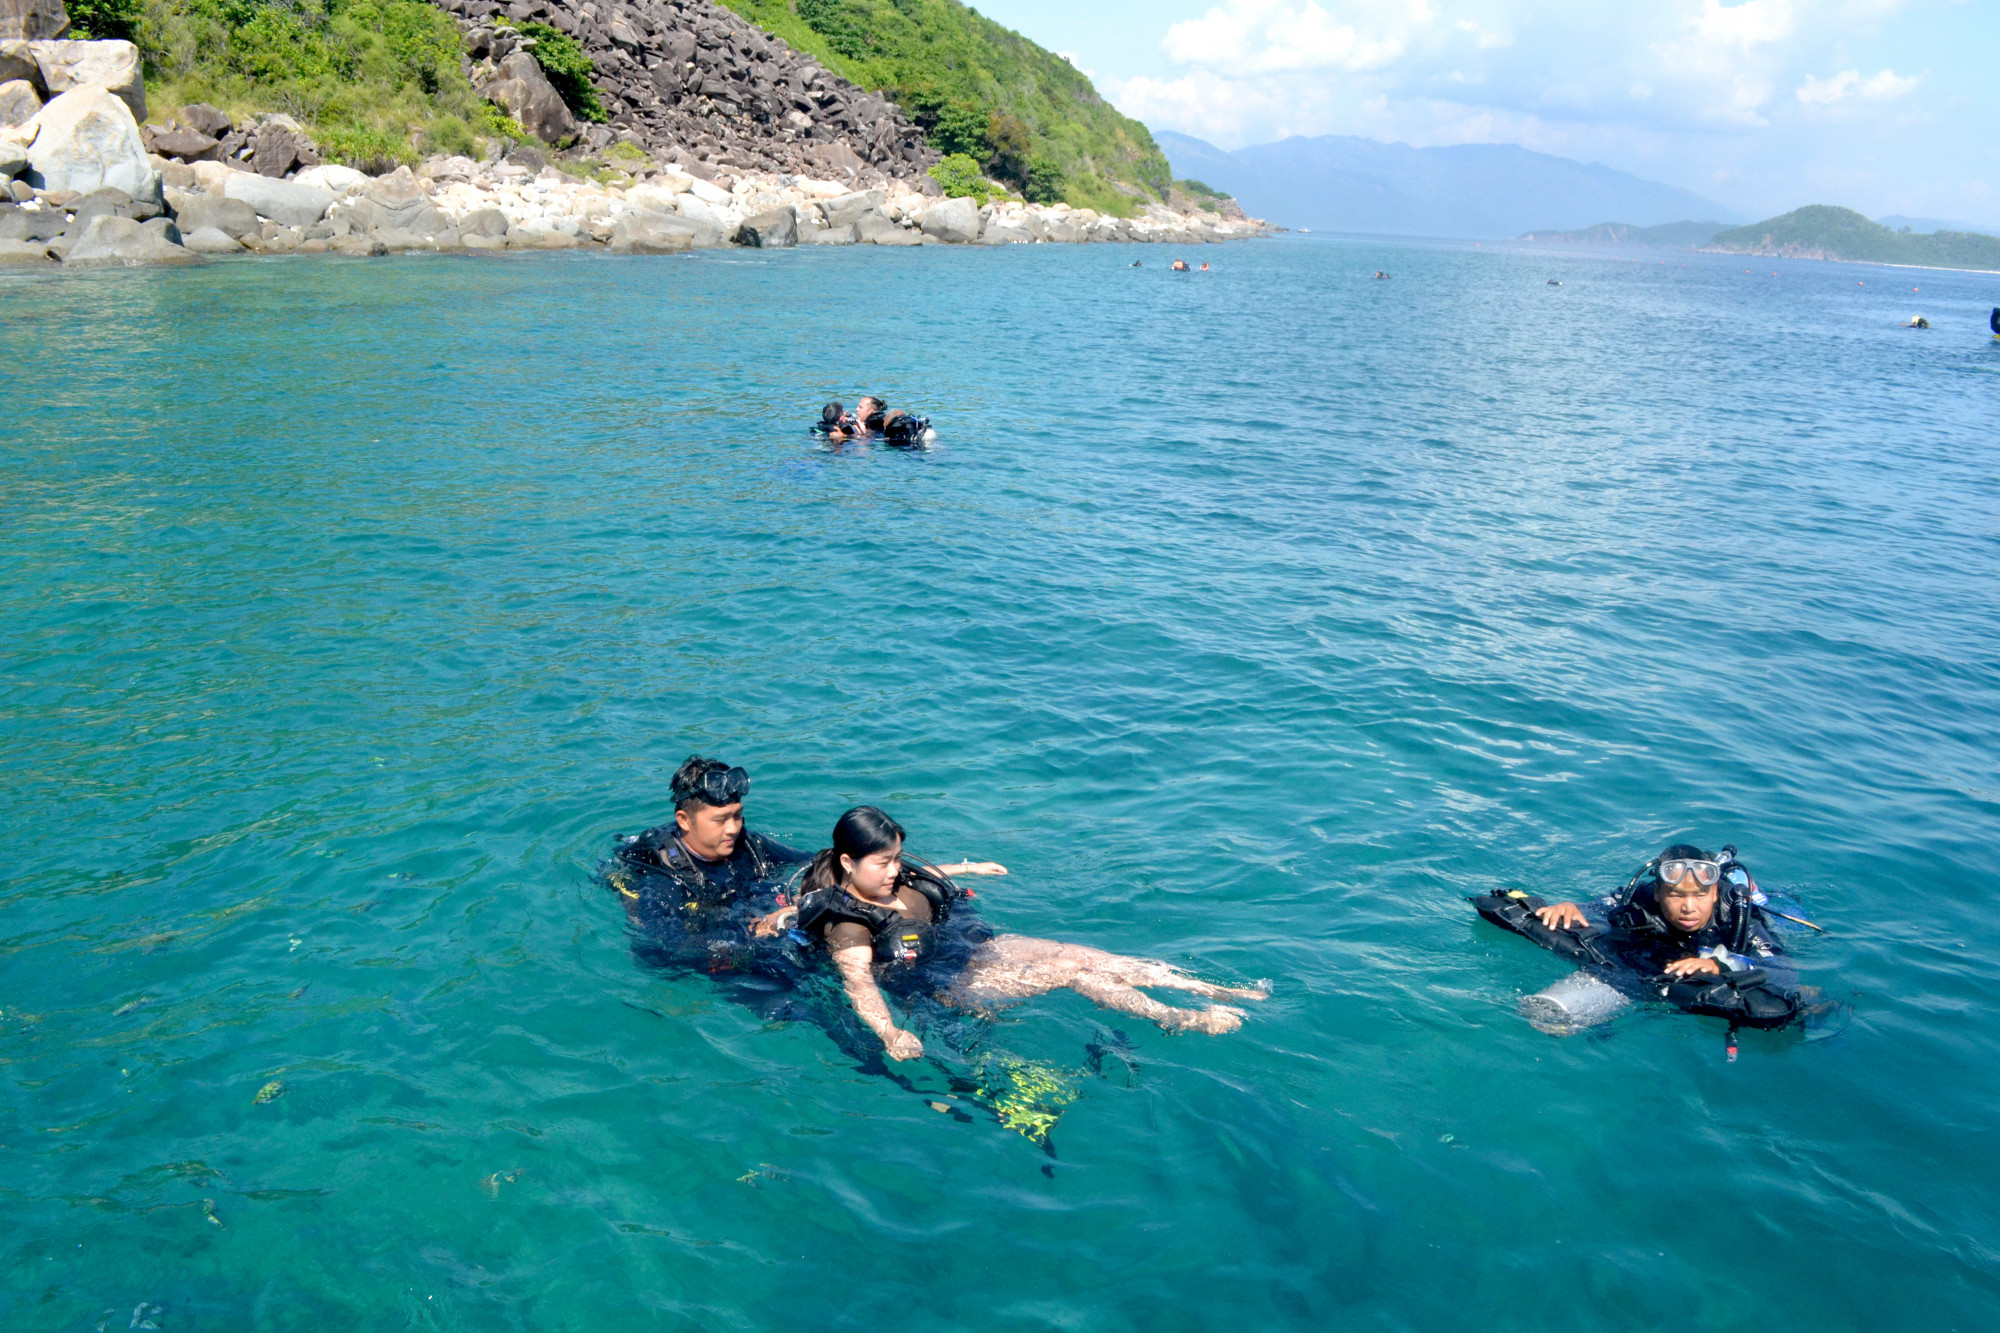 Ban quản lý vịnh Nha Trang thông báo hoạt động bơi, lặn biển tại khu vực Hòn Mun sẽ tạm ngừng từ ngày 27/6